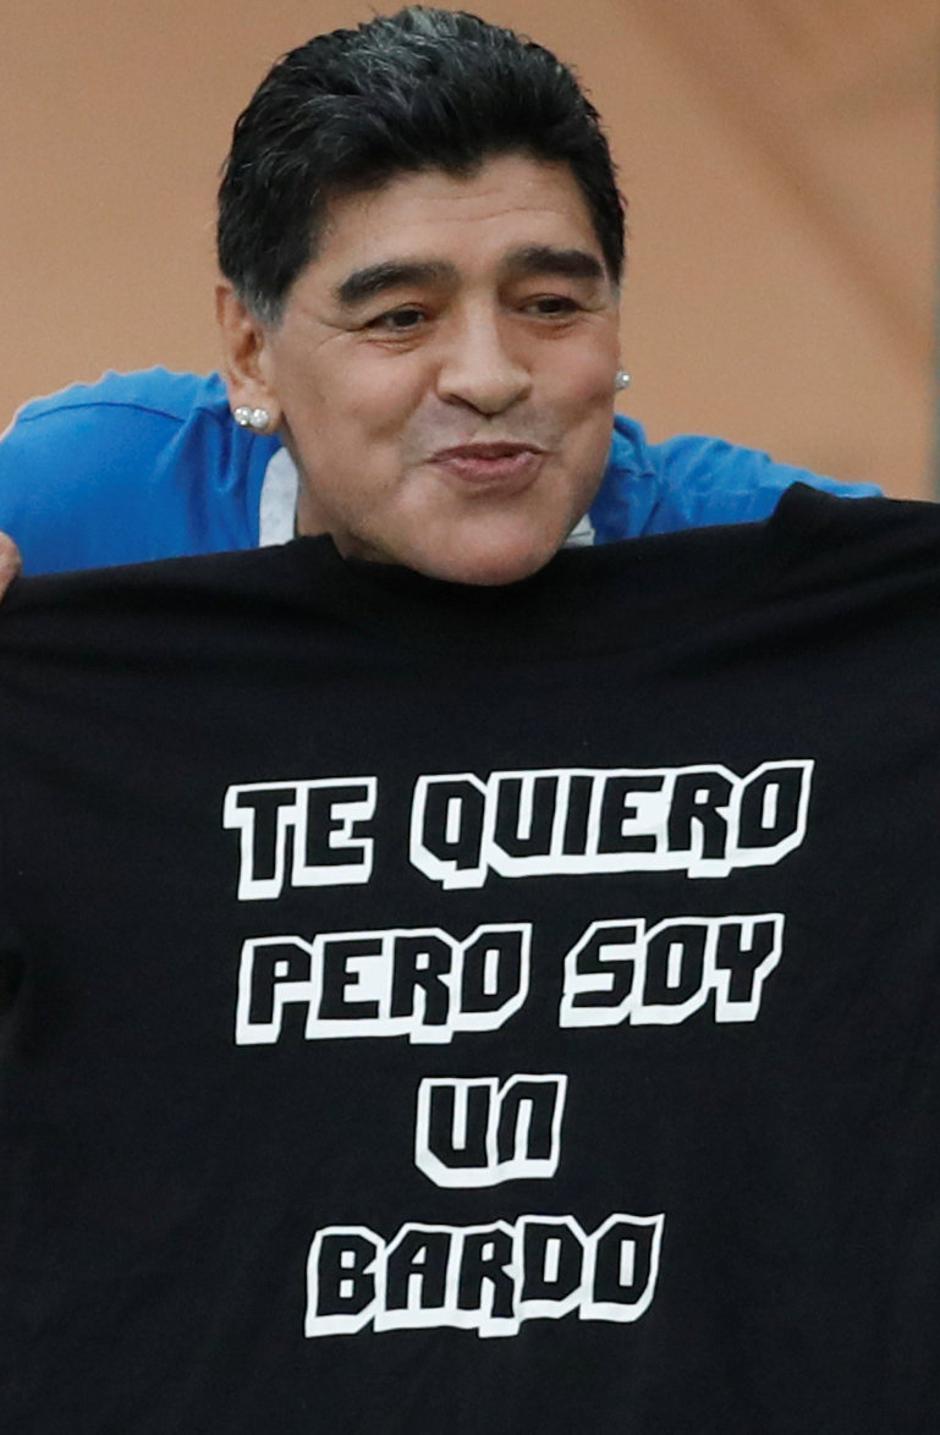 Diego Maradona | Author: REUTERS